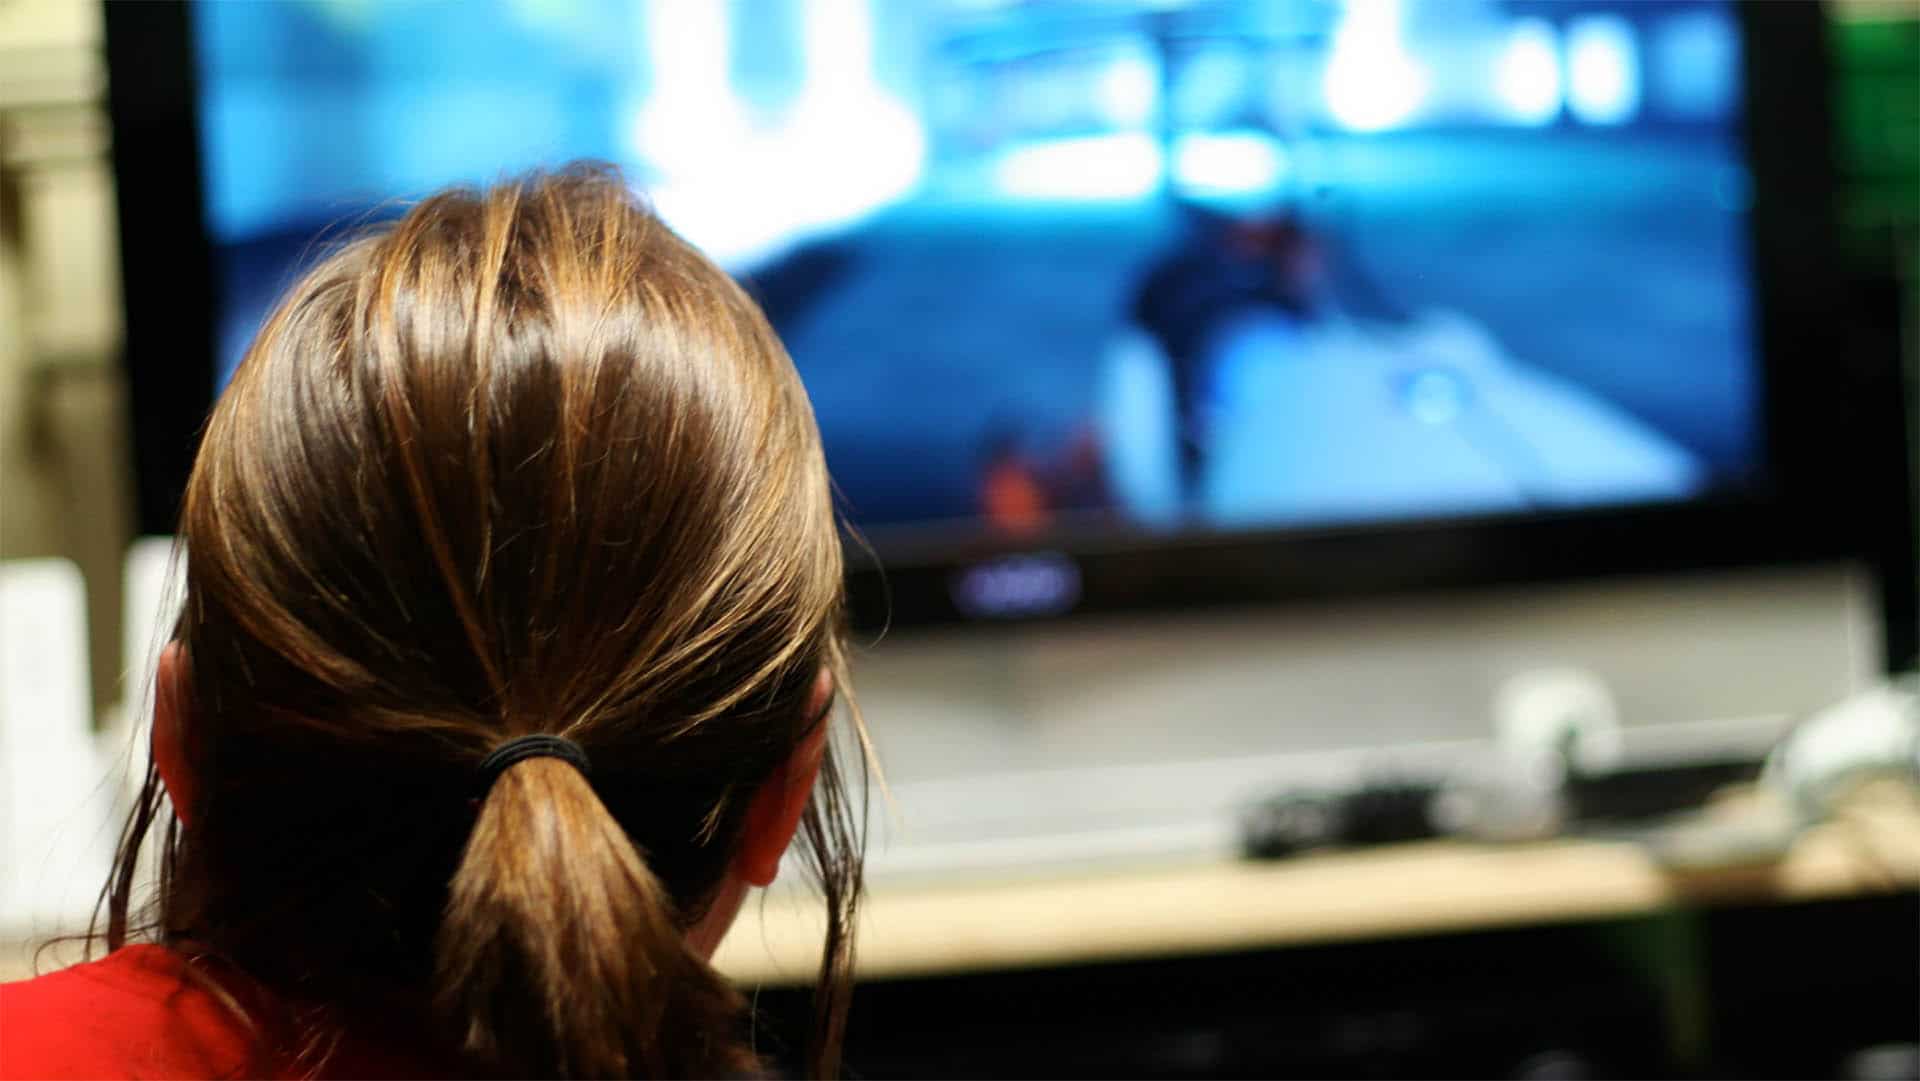 Welche Auswirkungen haben Computerspiele auf ein aggressives Verhalten der Spieler? Diese Frage spaltet die Wissenschaft seit es Computerspiele gibt.